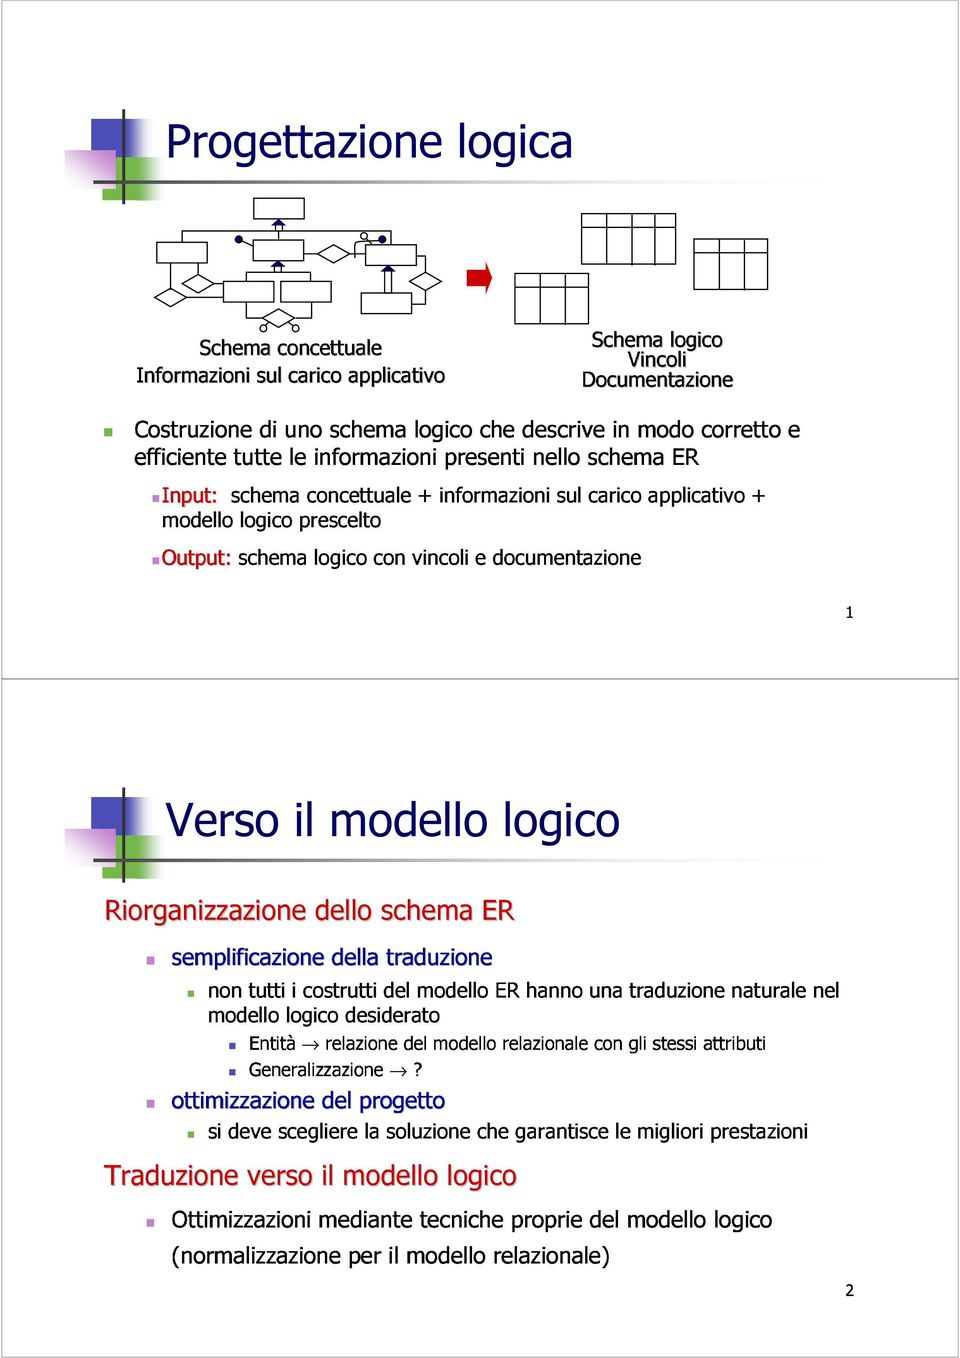 non modello tutti i della traduzione il costrutti modello del ER logico Entità relazione Generalizzazione logico desiderato?